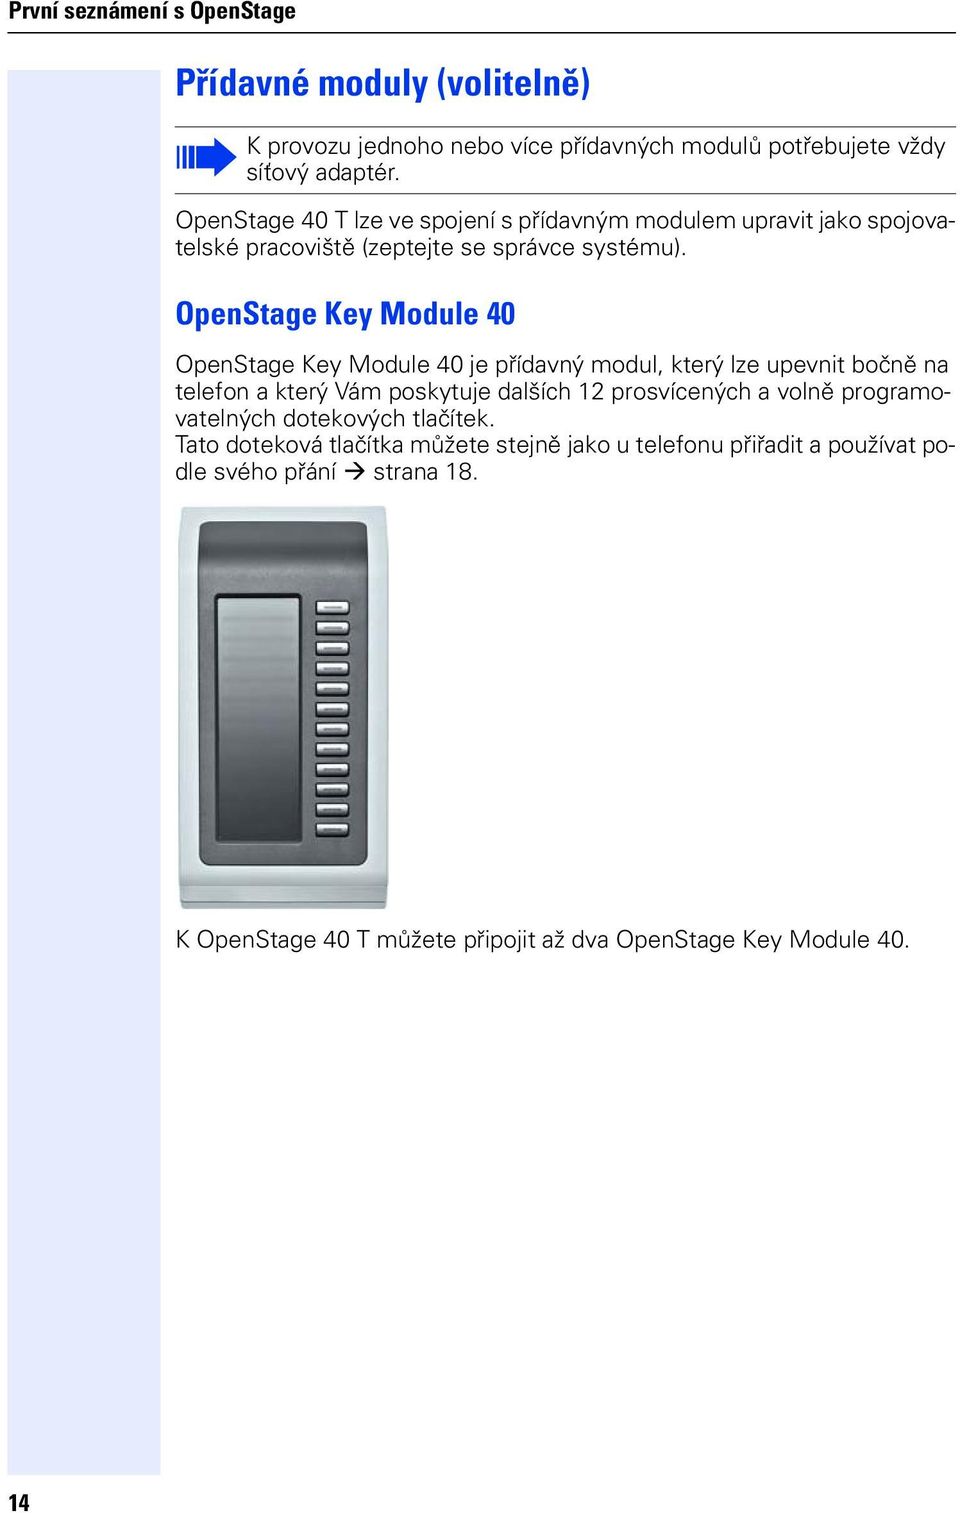 OpenStage Key Module 40 OpenStage Key Module 40 e přídavný modul, který lze upevnit bočně na telefon a který Vám poskytue dalších 12 prosvícených a